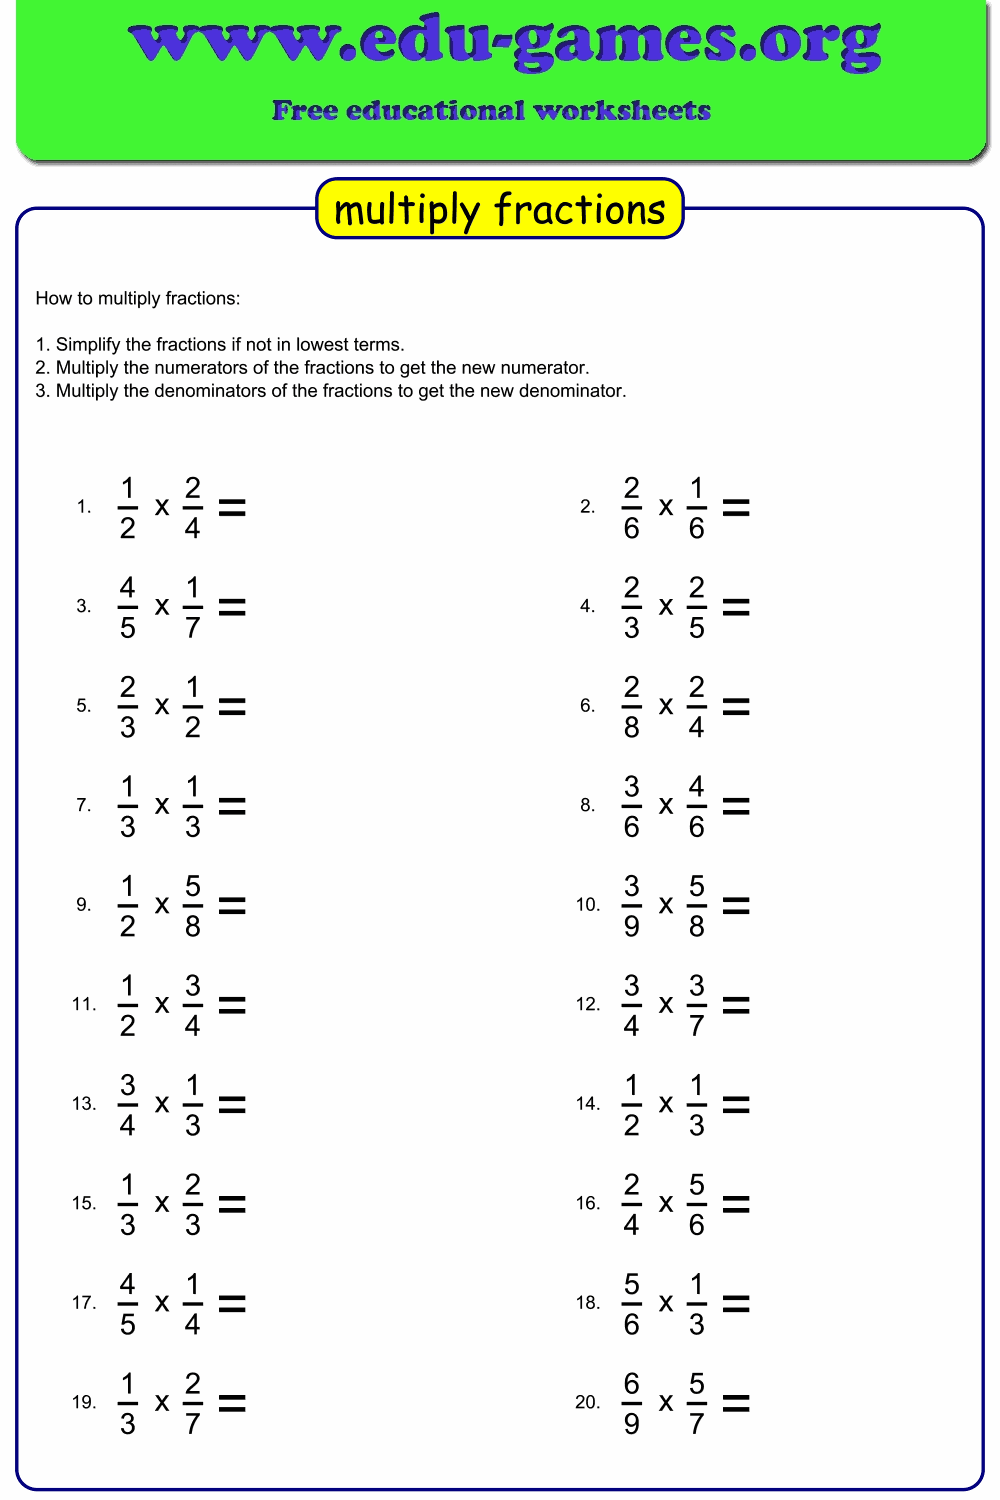 fractions-multiplication-worksheets-multiplication-worksheets